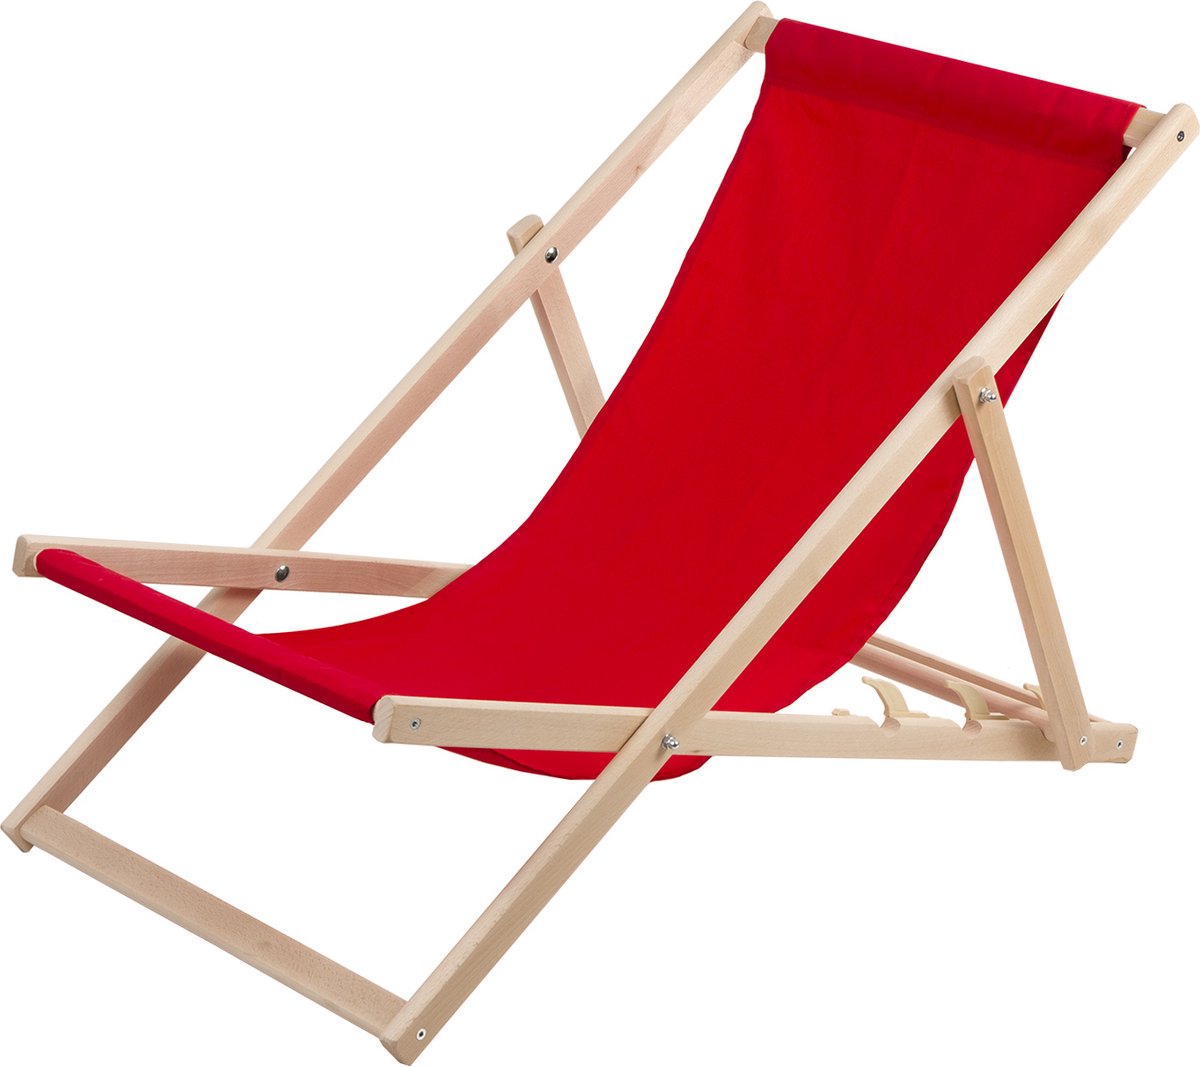 Ligstoel - Comfortabele houten ligstoel in rood ideaal voor het strand, balkon, terras